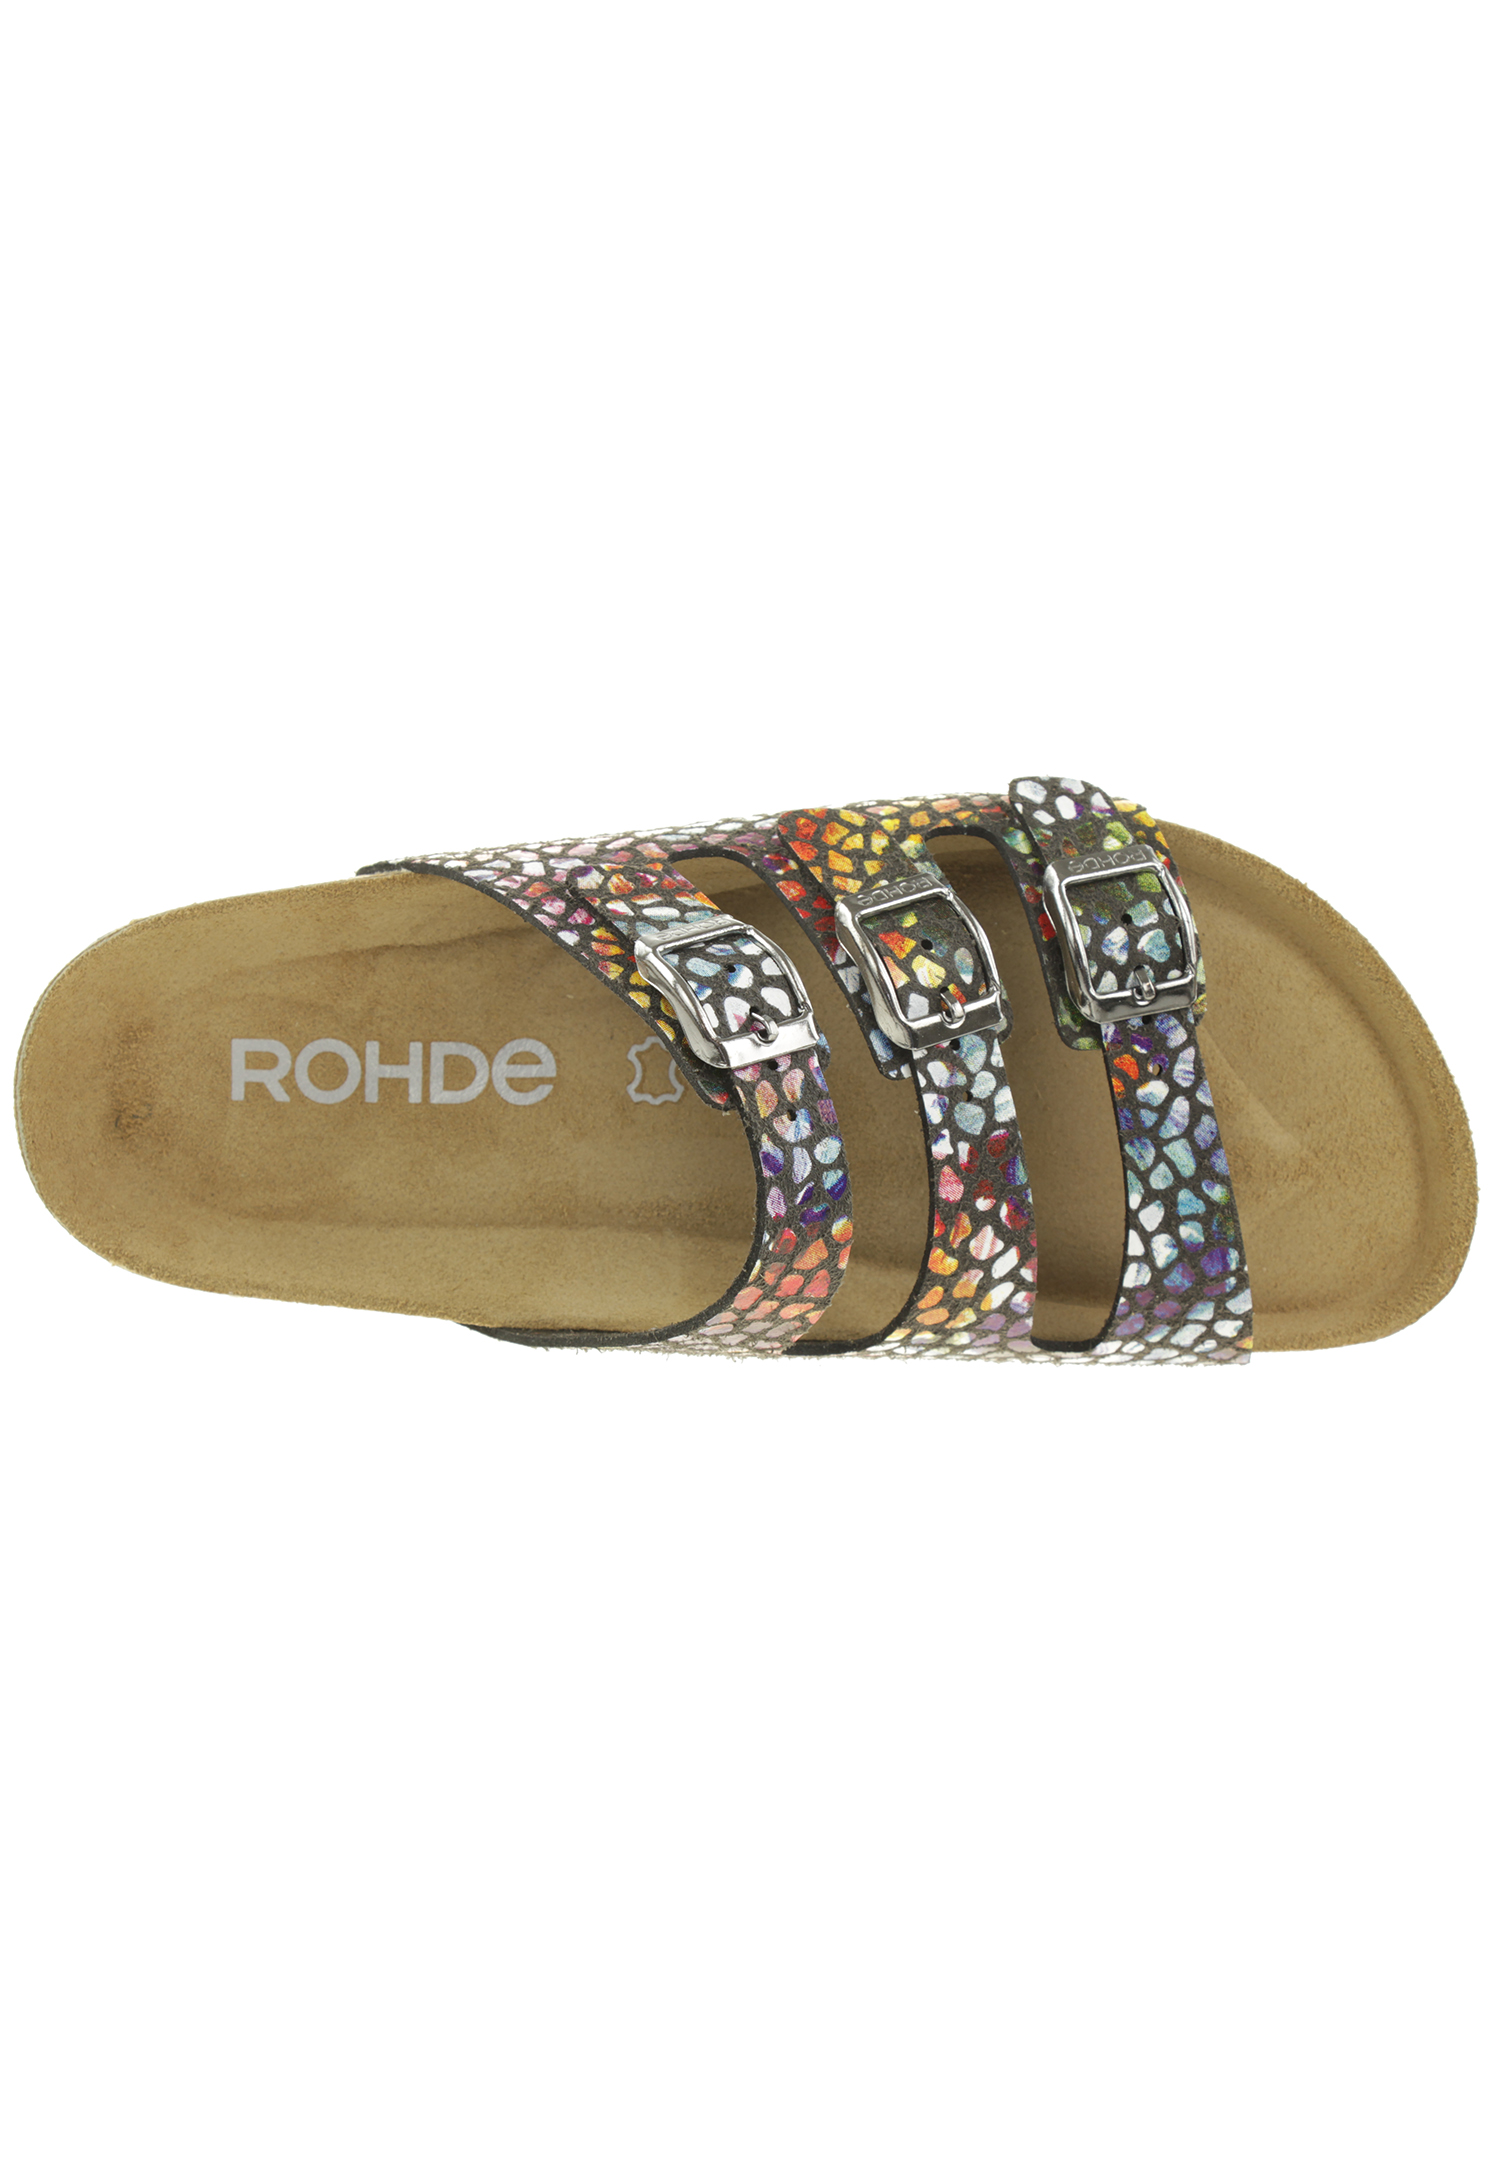 Rohde Sunnys N´13 Damen Pantolette Hausschuhe Sandale  5620 Bunt 